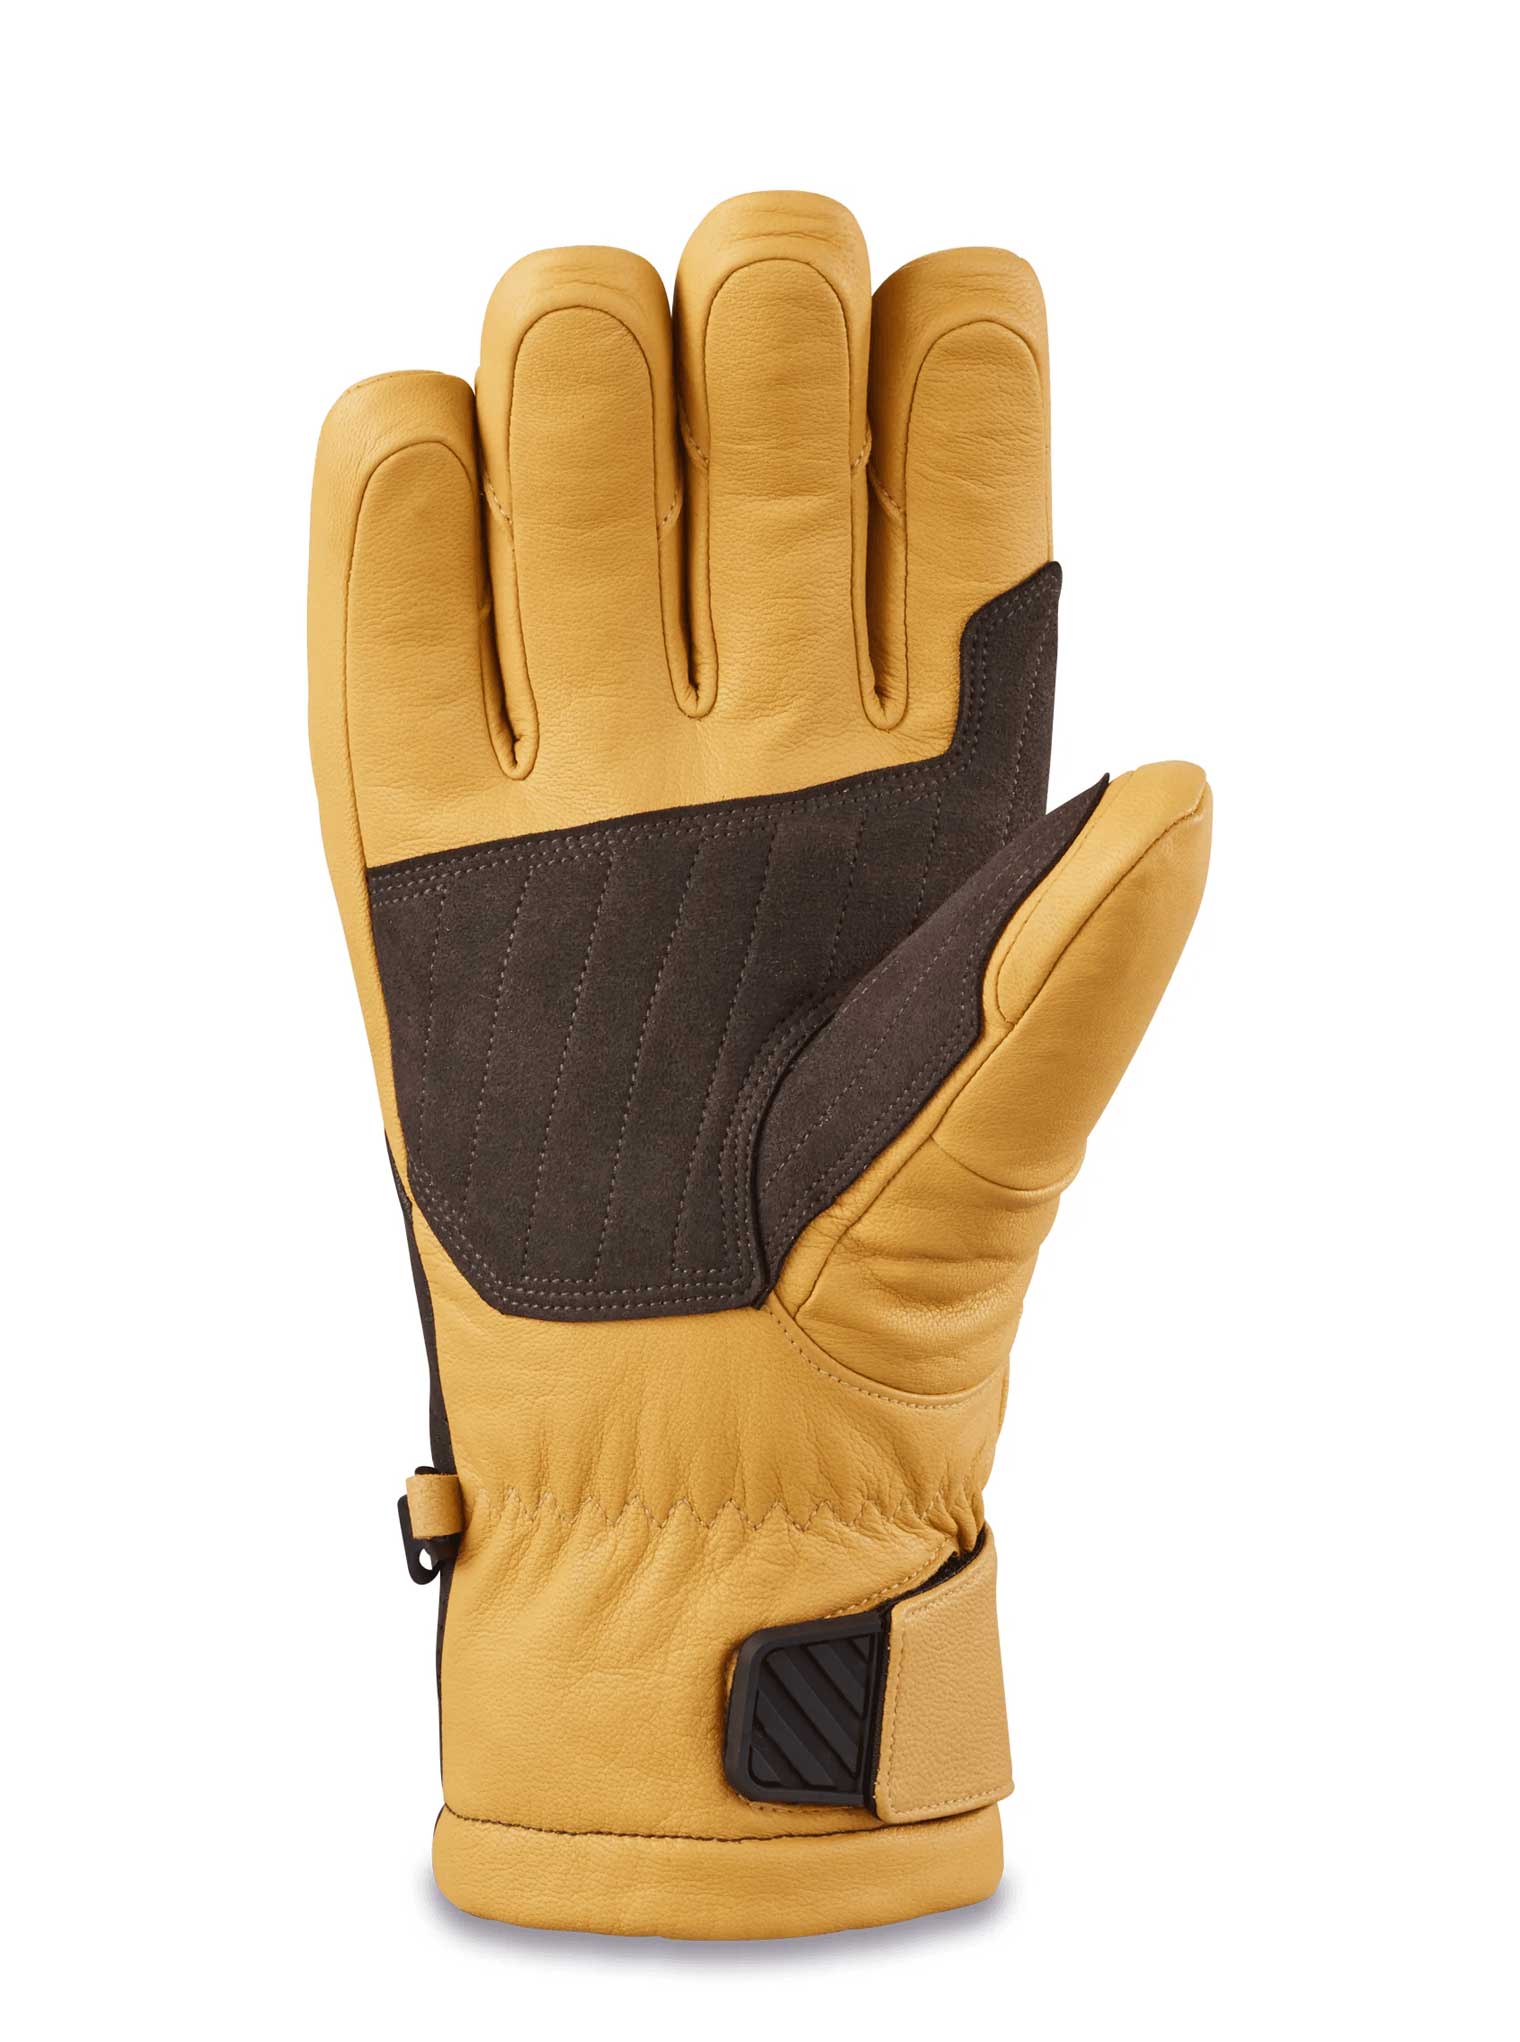 Kodiak Gore-Tex Glove